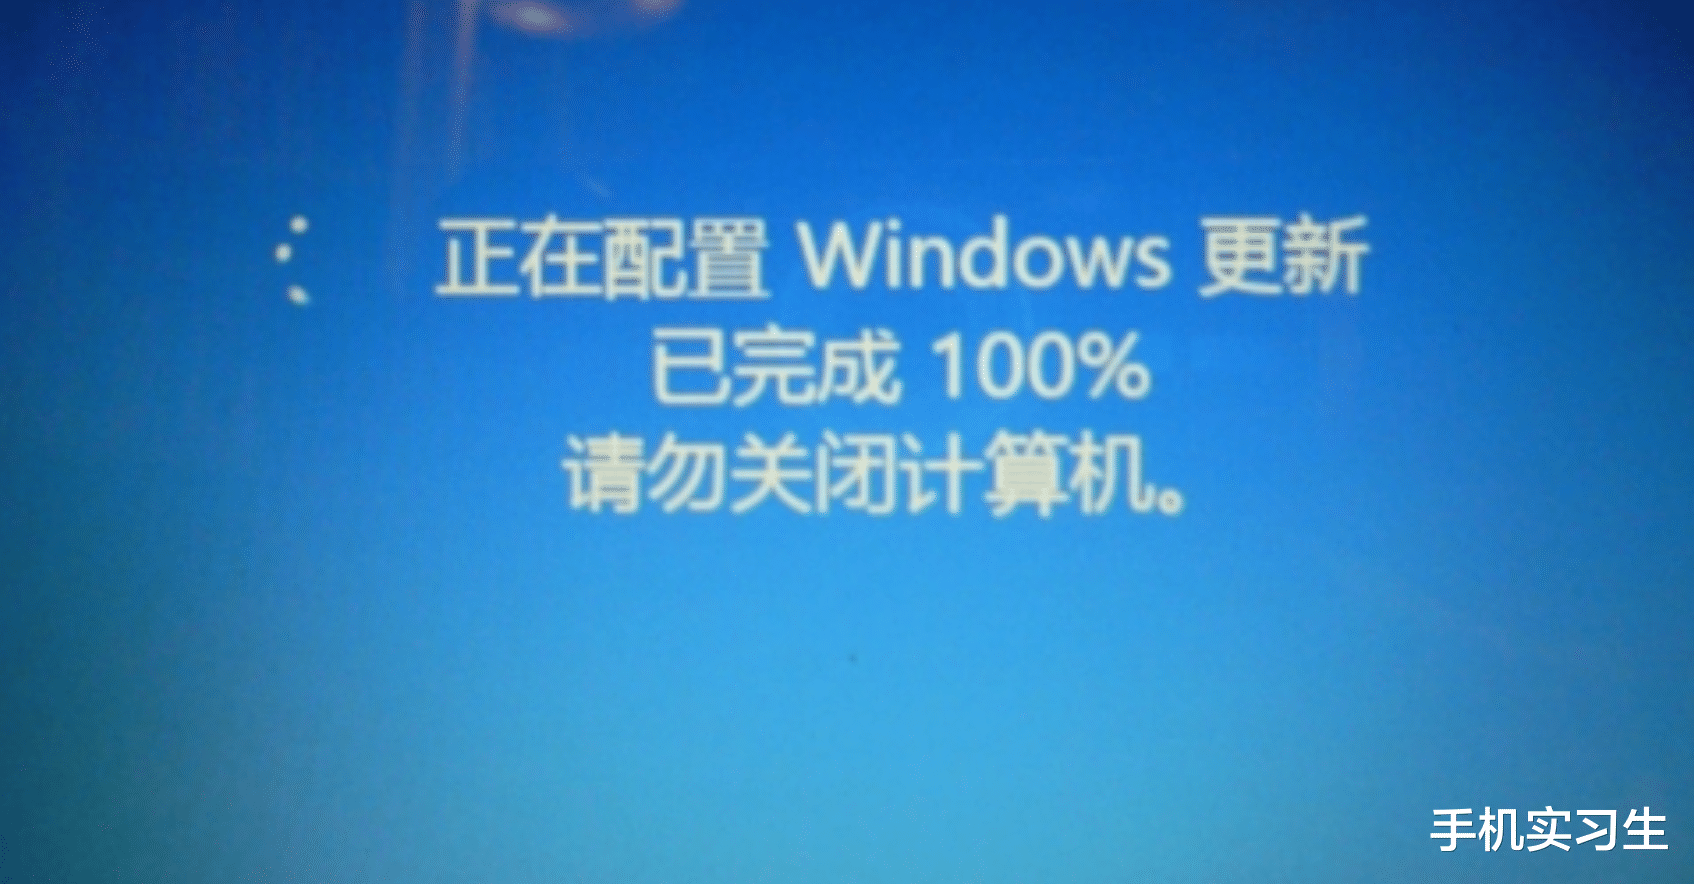 再次确认macOS无法取代windows系统